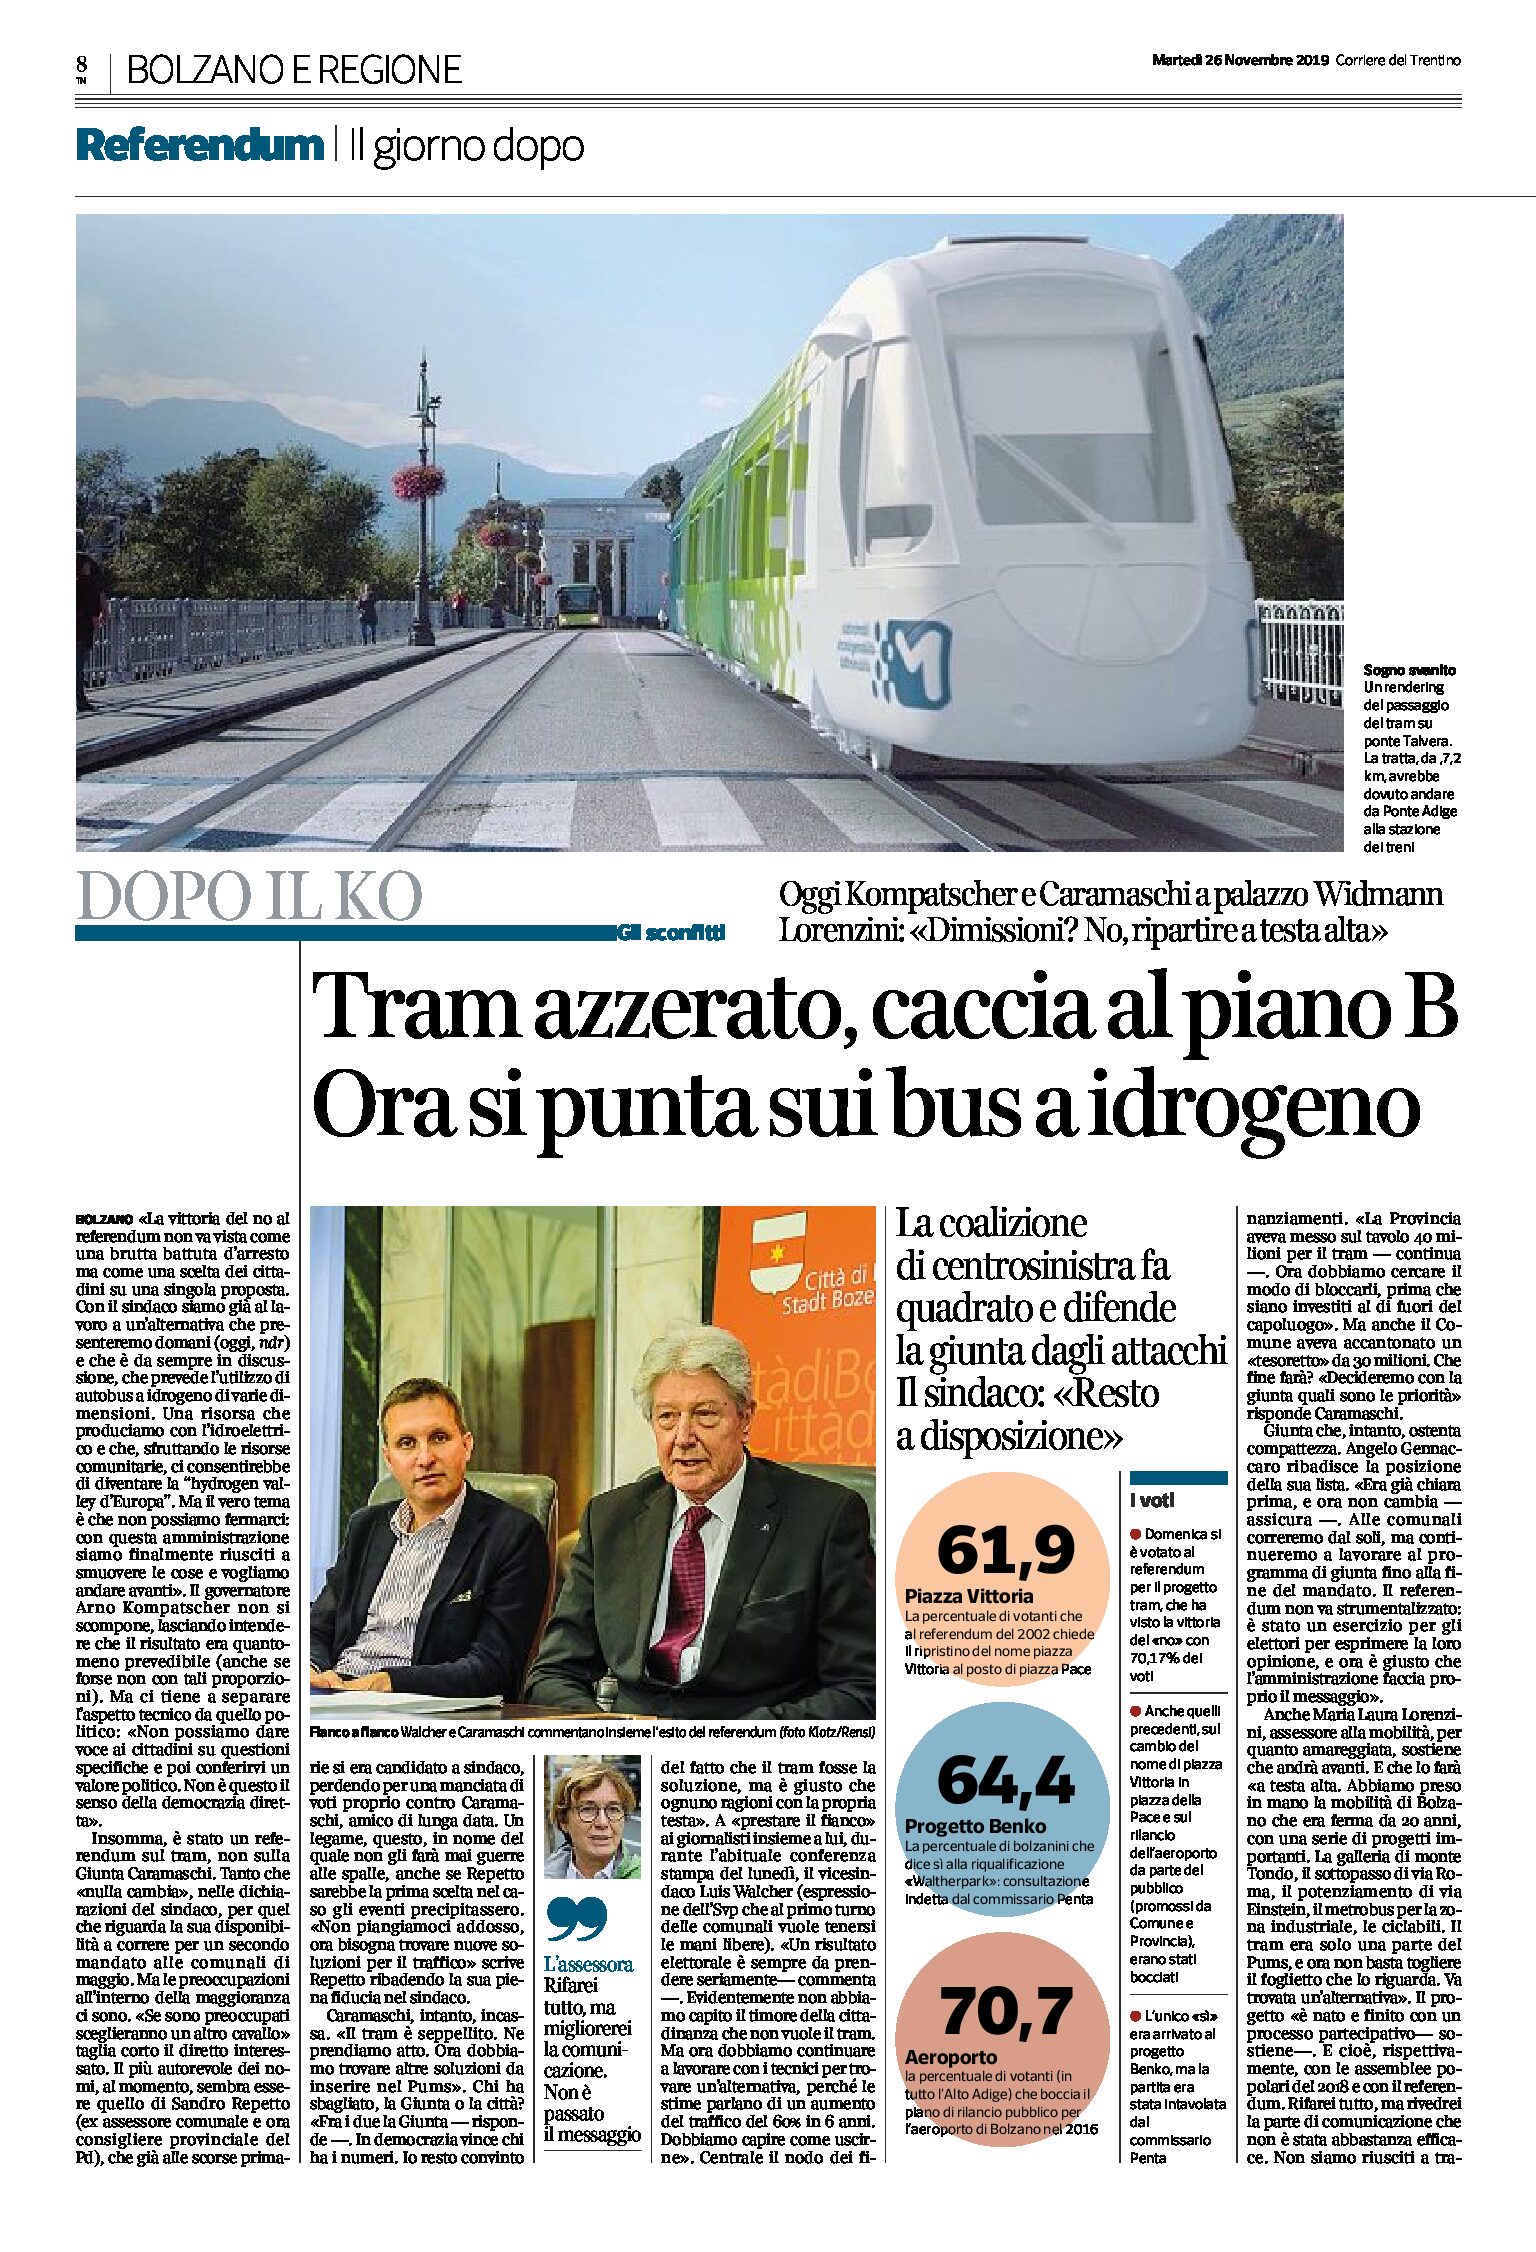 Bolzano, referendum: tram azzerato, caccia al piano B. Si punta sui bus a idrogeno